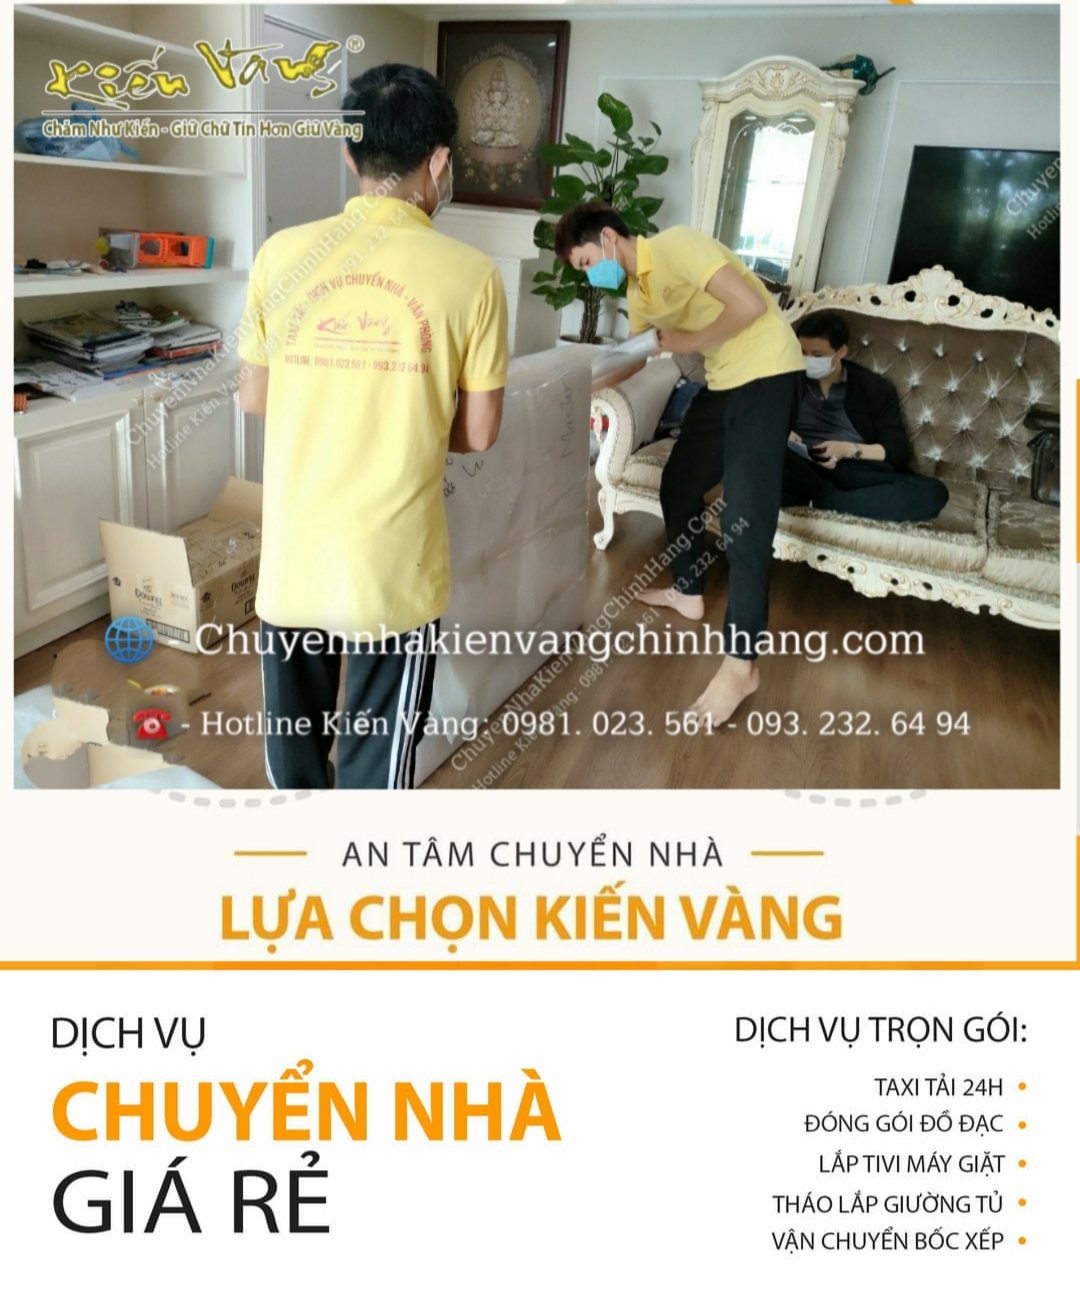 Dịch vụ chuyển nhà chuyên nghiệp Hà Nội trọn gói giá rẻ Kiến Vàng 2